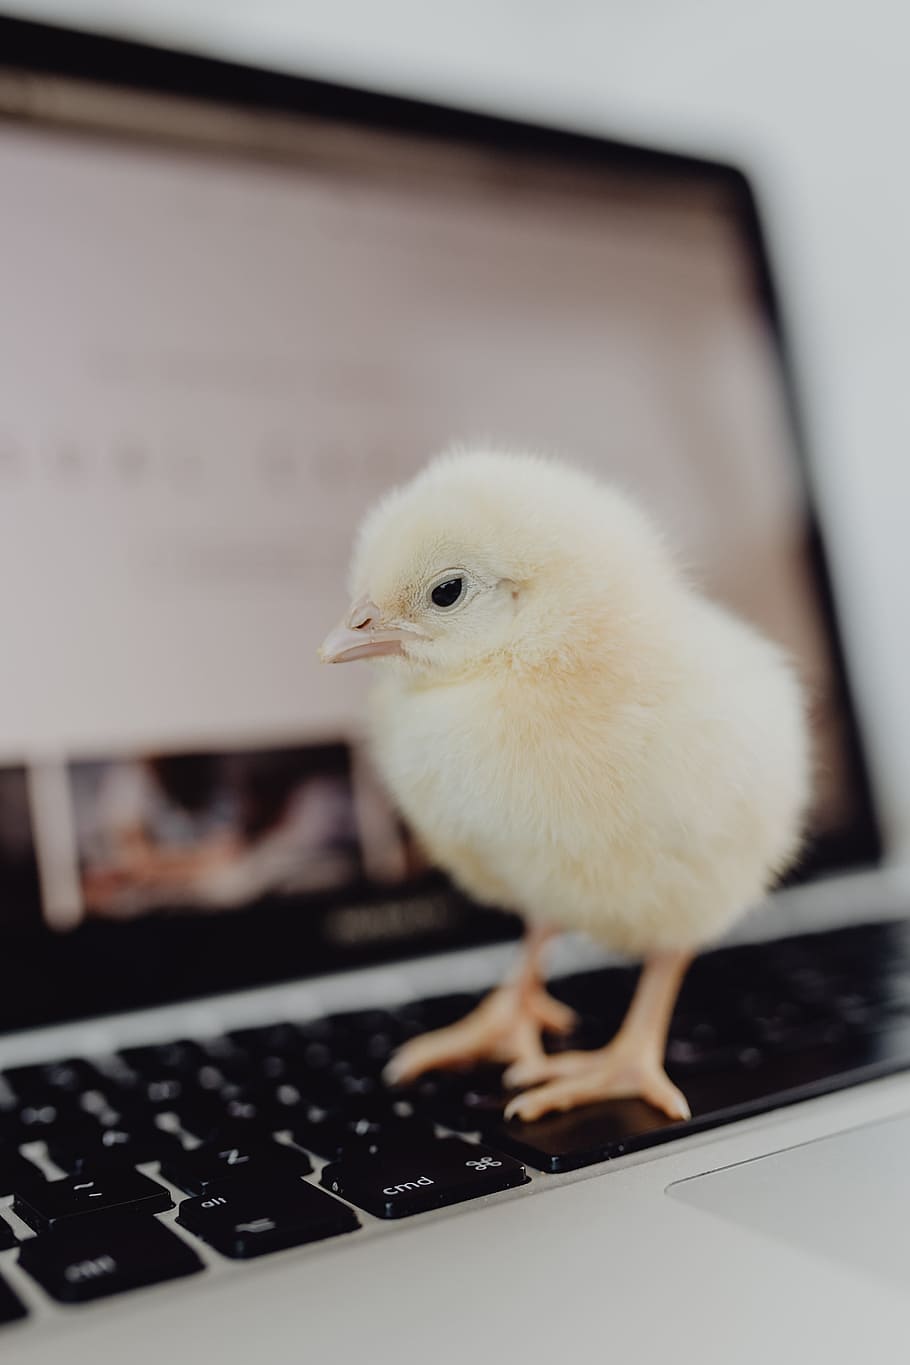 recién nacido, pequeño, pollo, computadora portátil, computadora, teclado, amarillo, macbook, pájaro, bebé